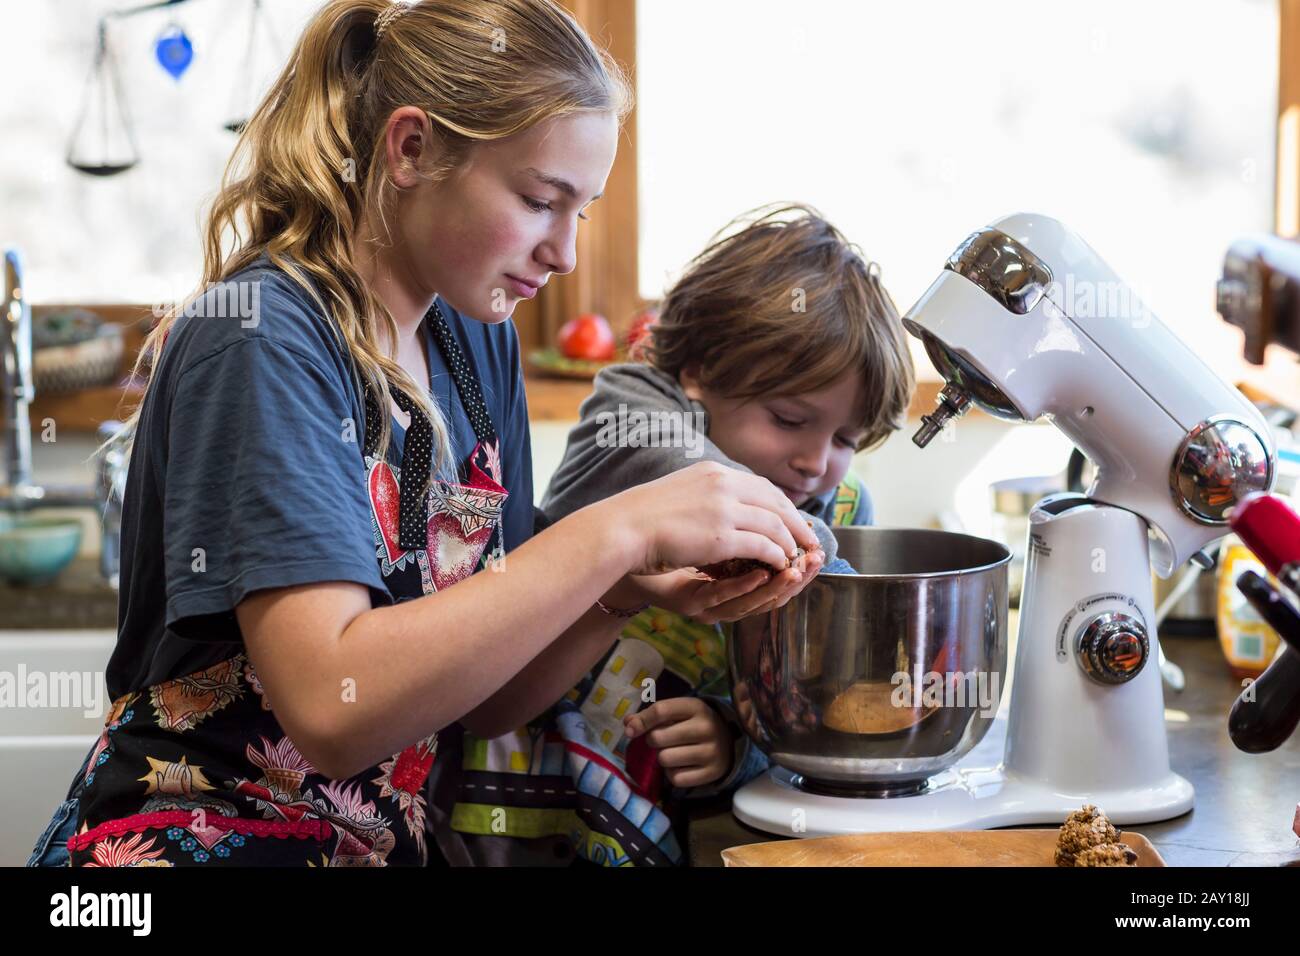 Das dreizehnjährige Mädchen im Teenager-Alter und ihr Bruder im Alter von 6 Jahren in der Küche mit einer Mischschale Stockfoto